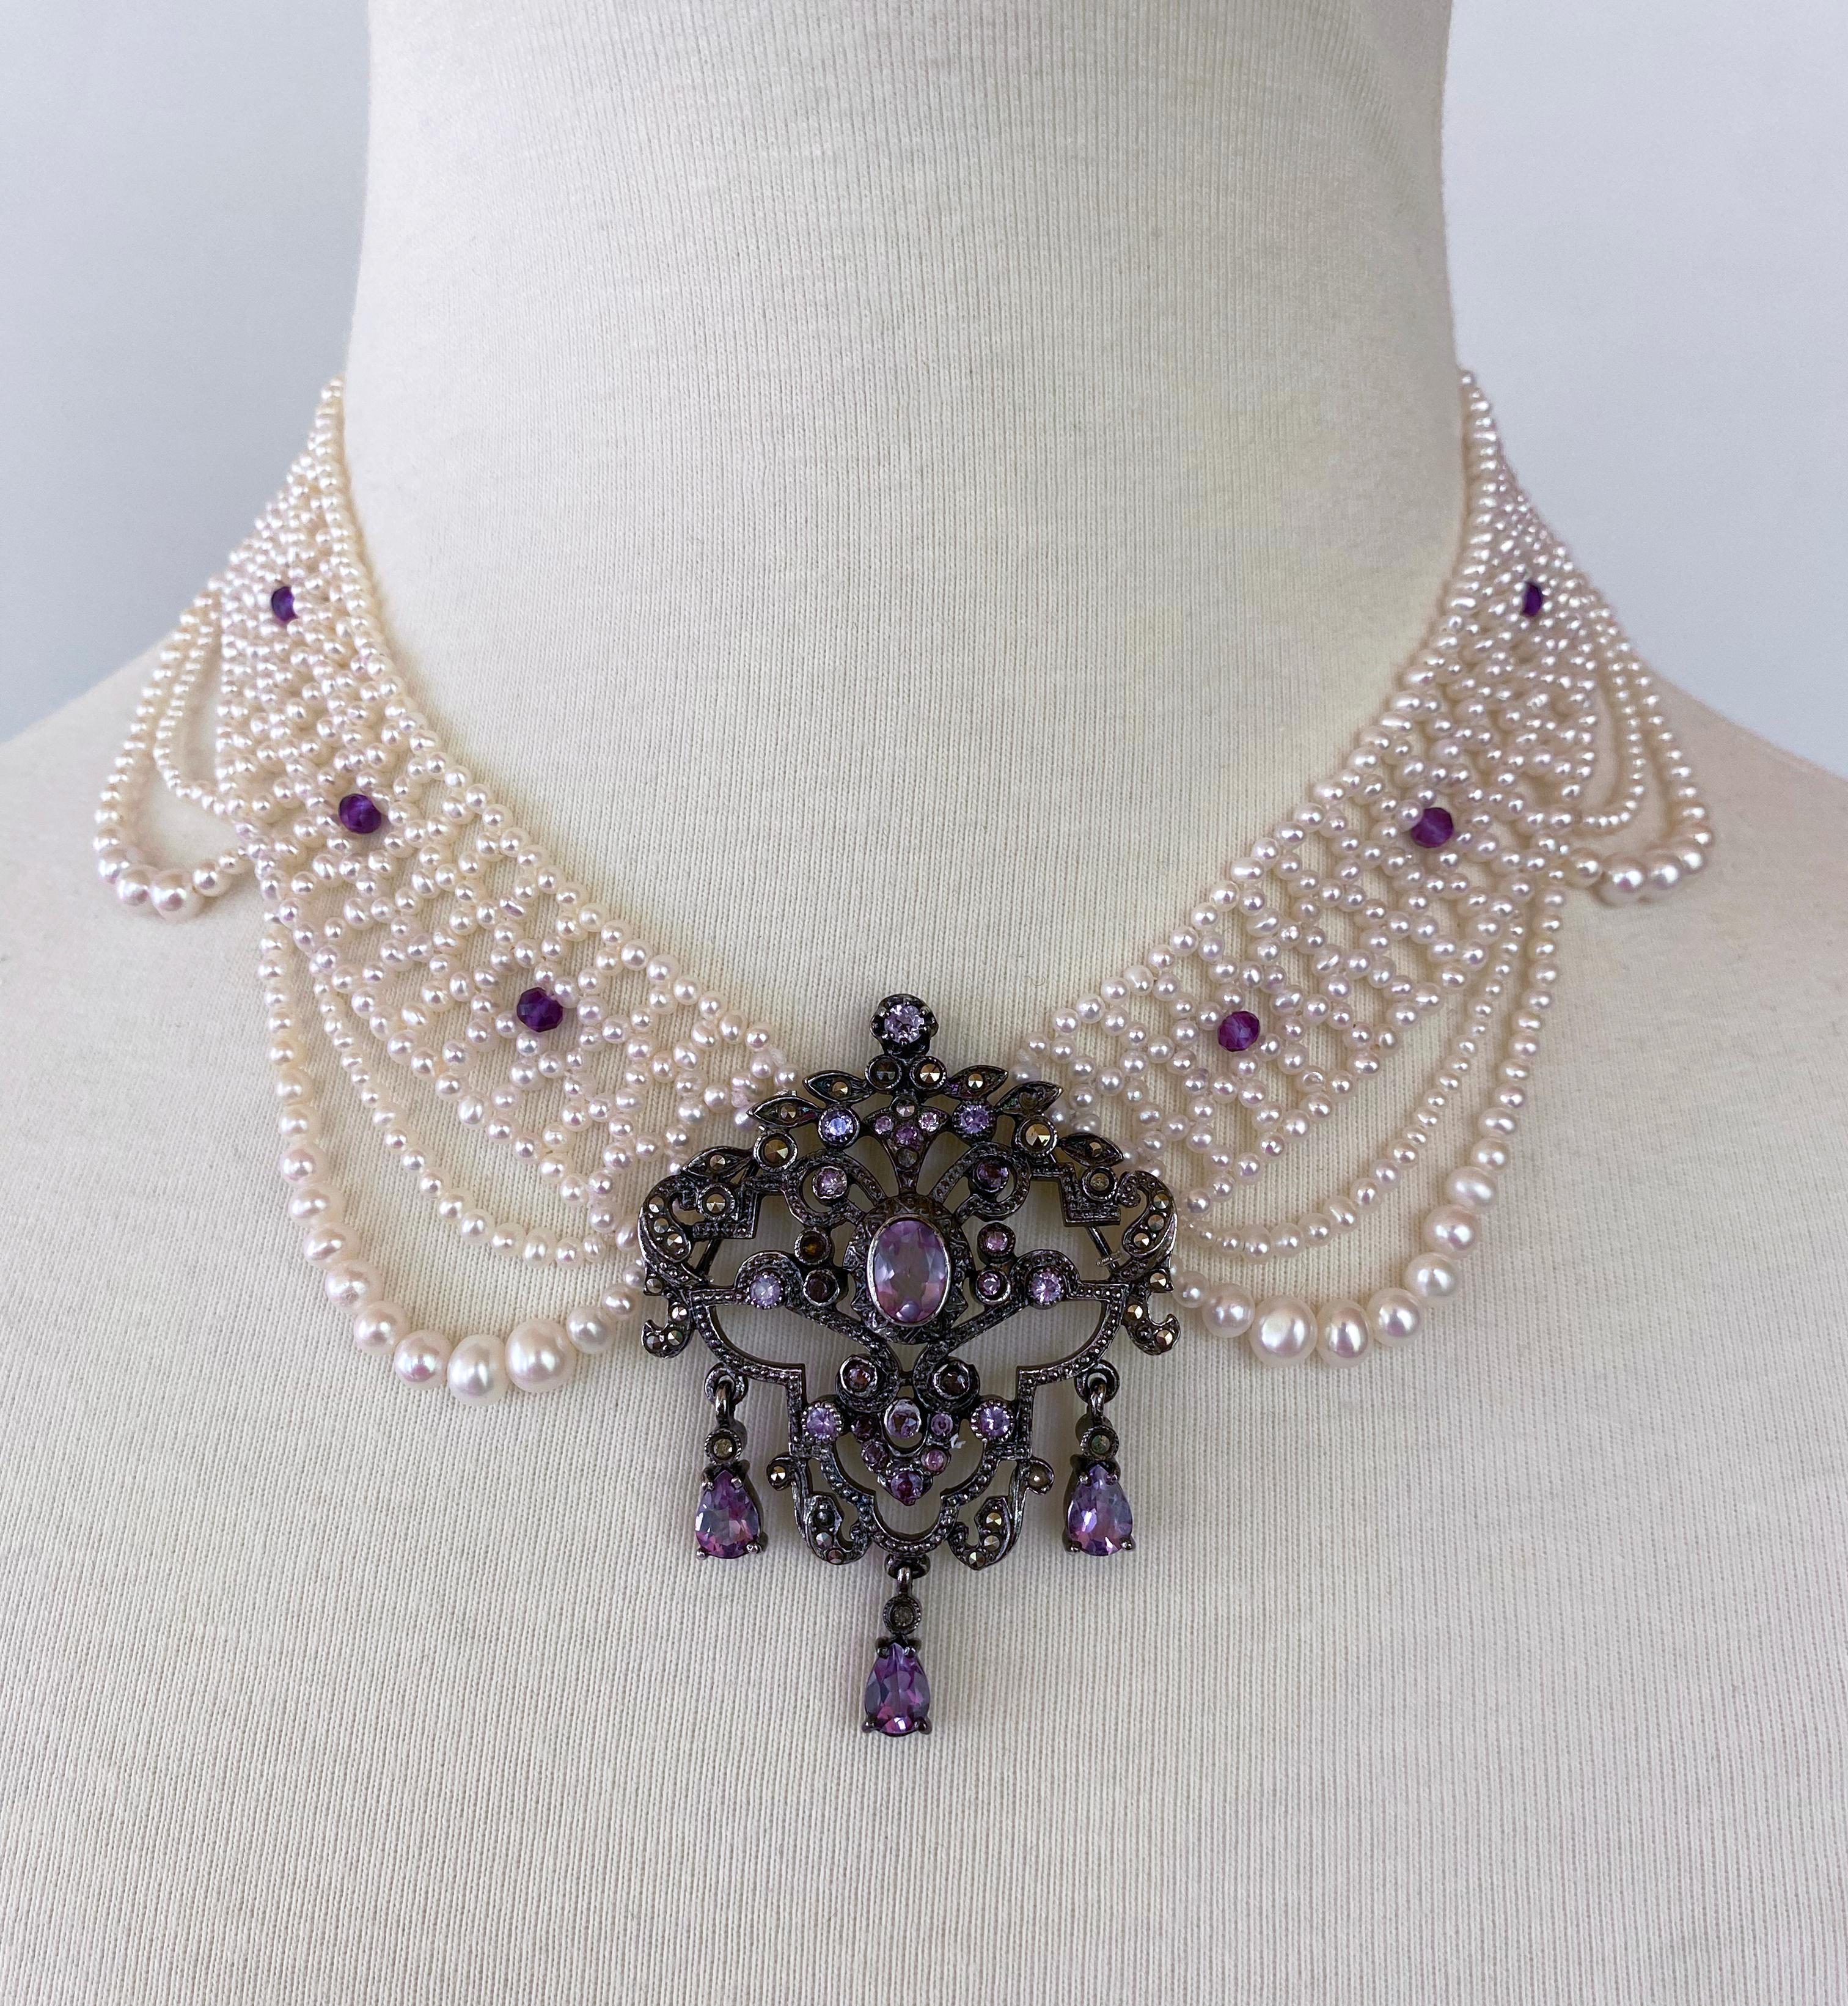 Gorgeous One of One Halskette von Marina J. Dieses Stück verfügt über eine Vintage viktorianischen inspiriert Silber Brosche mit Amethyst und Kristall-Set in, neu in eine  atemberaubendes Mittelstück. Das Mittelstück verleiht erstaunlichen Glanz und